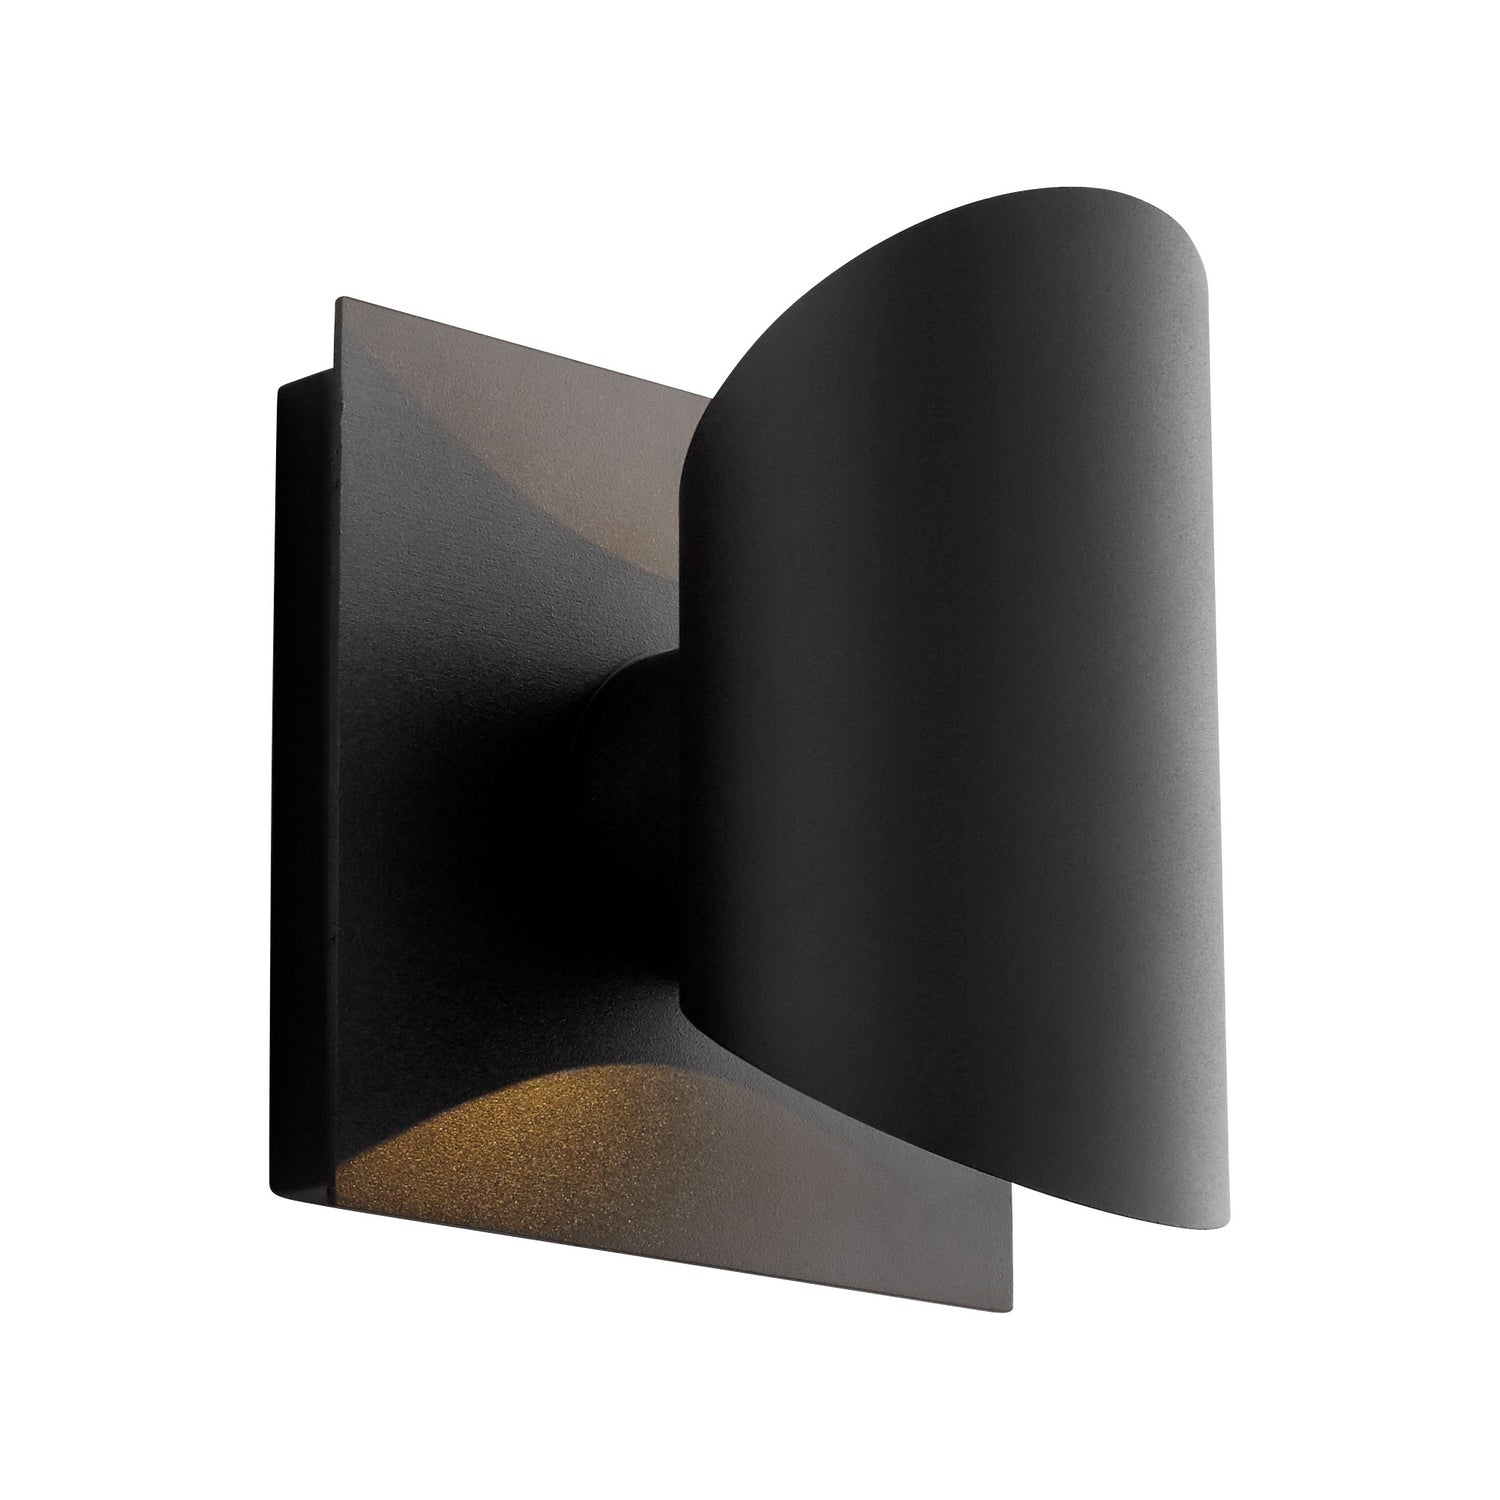 Oxygen Caliber 3-733-15 Modern Cylinder LED Outdoor Wall Light Fixture - Black